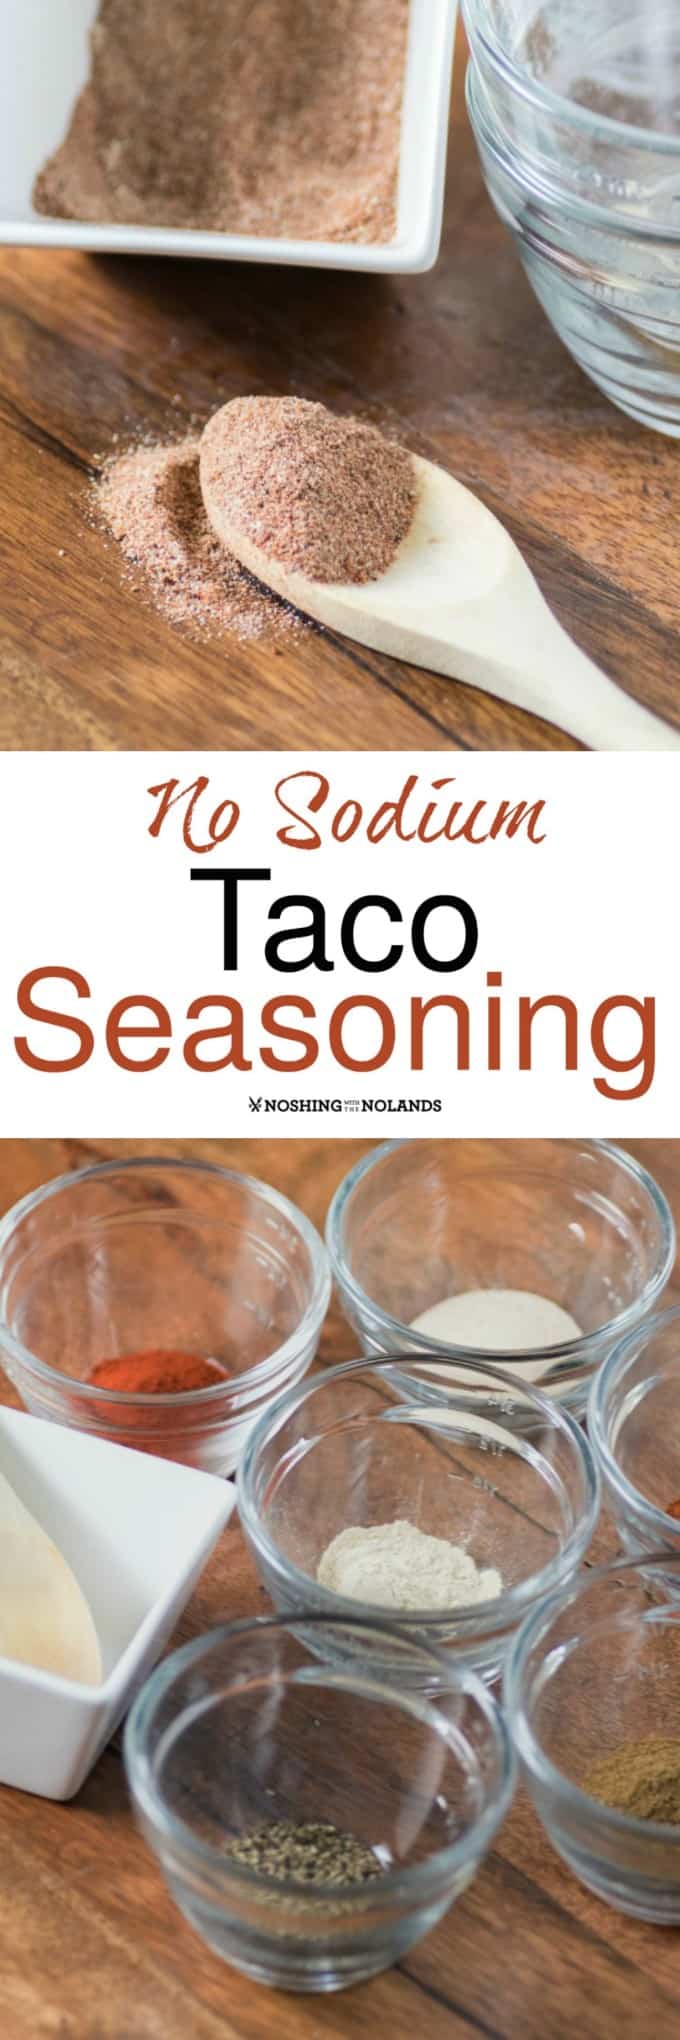 Salt Free Taco Seasoning – Salt Sanity